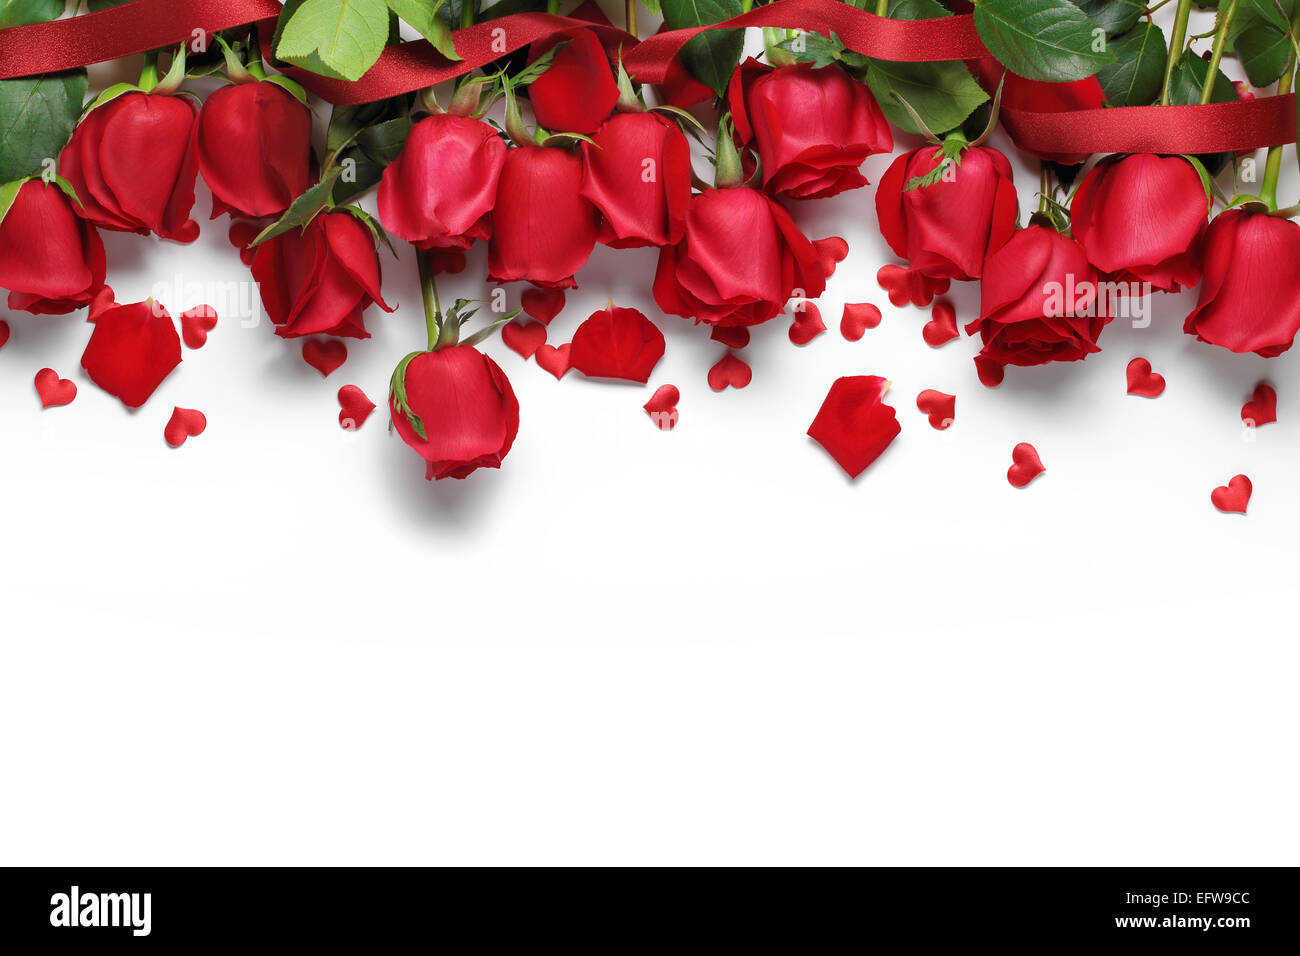 Rote Rosen und Herzen Form Ornamente auf weißem Hintergrund Stockfoto